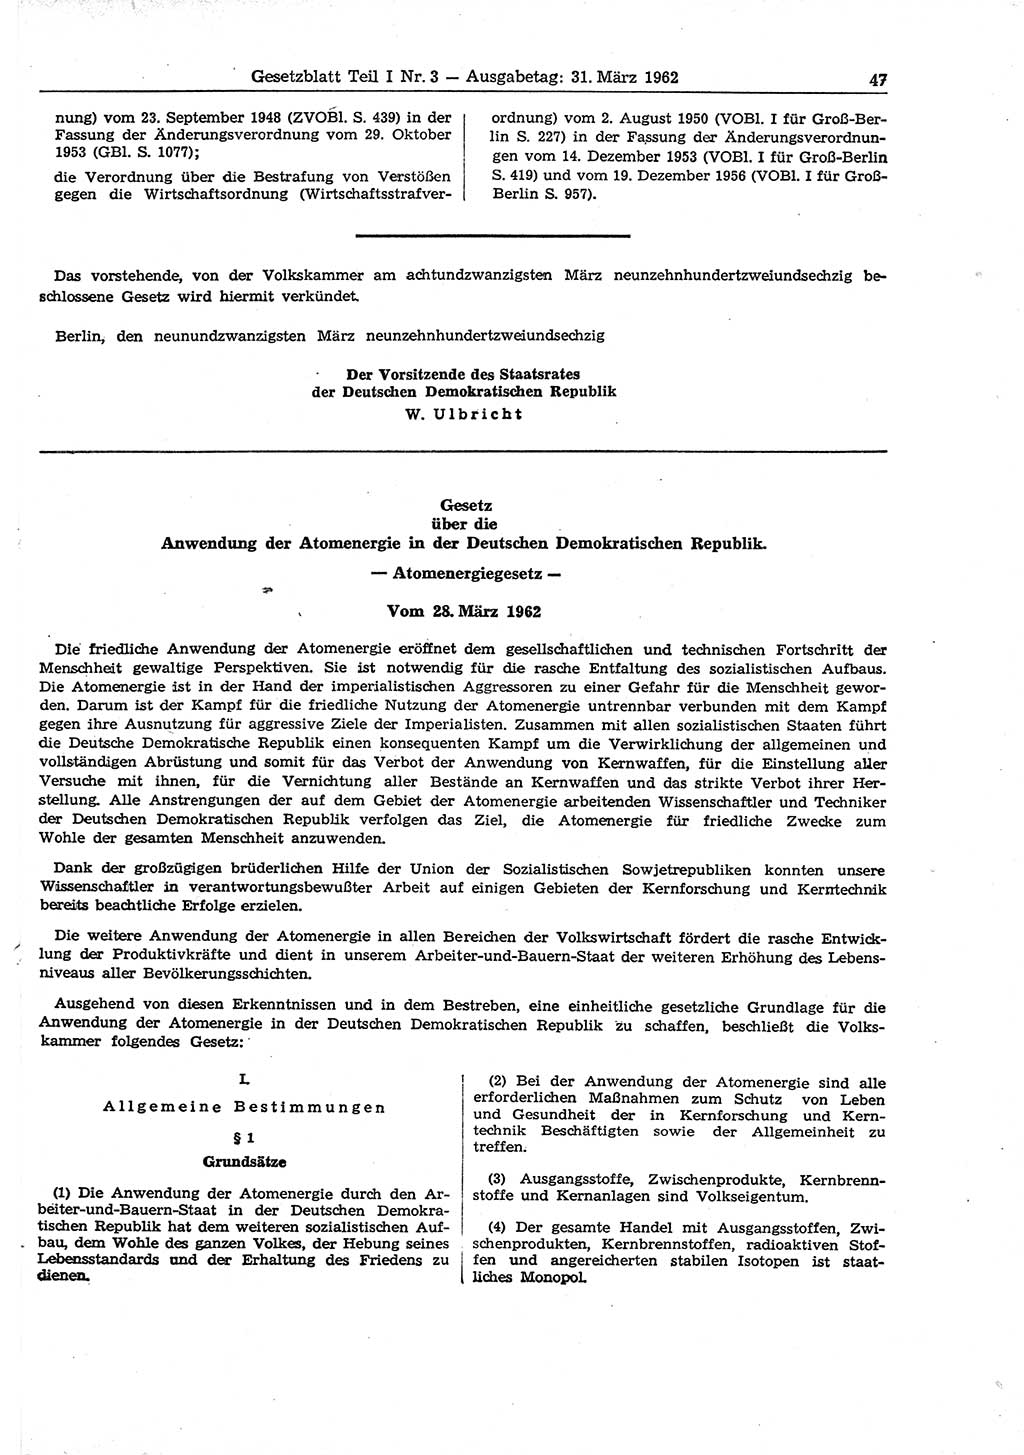 Gesetzblatt (GBl.) der Deutschen Demokratischen Republik (DDR) Teil Ⅰ 1962, Seite 47 (GBl. DDR Ⅰ 1962, S. 47)